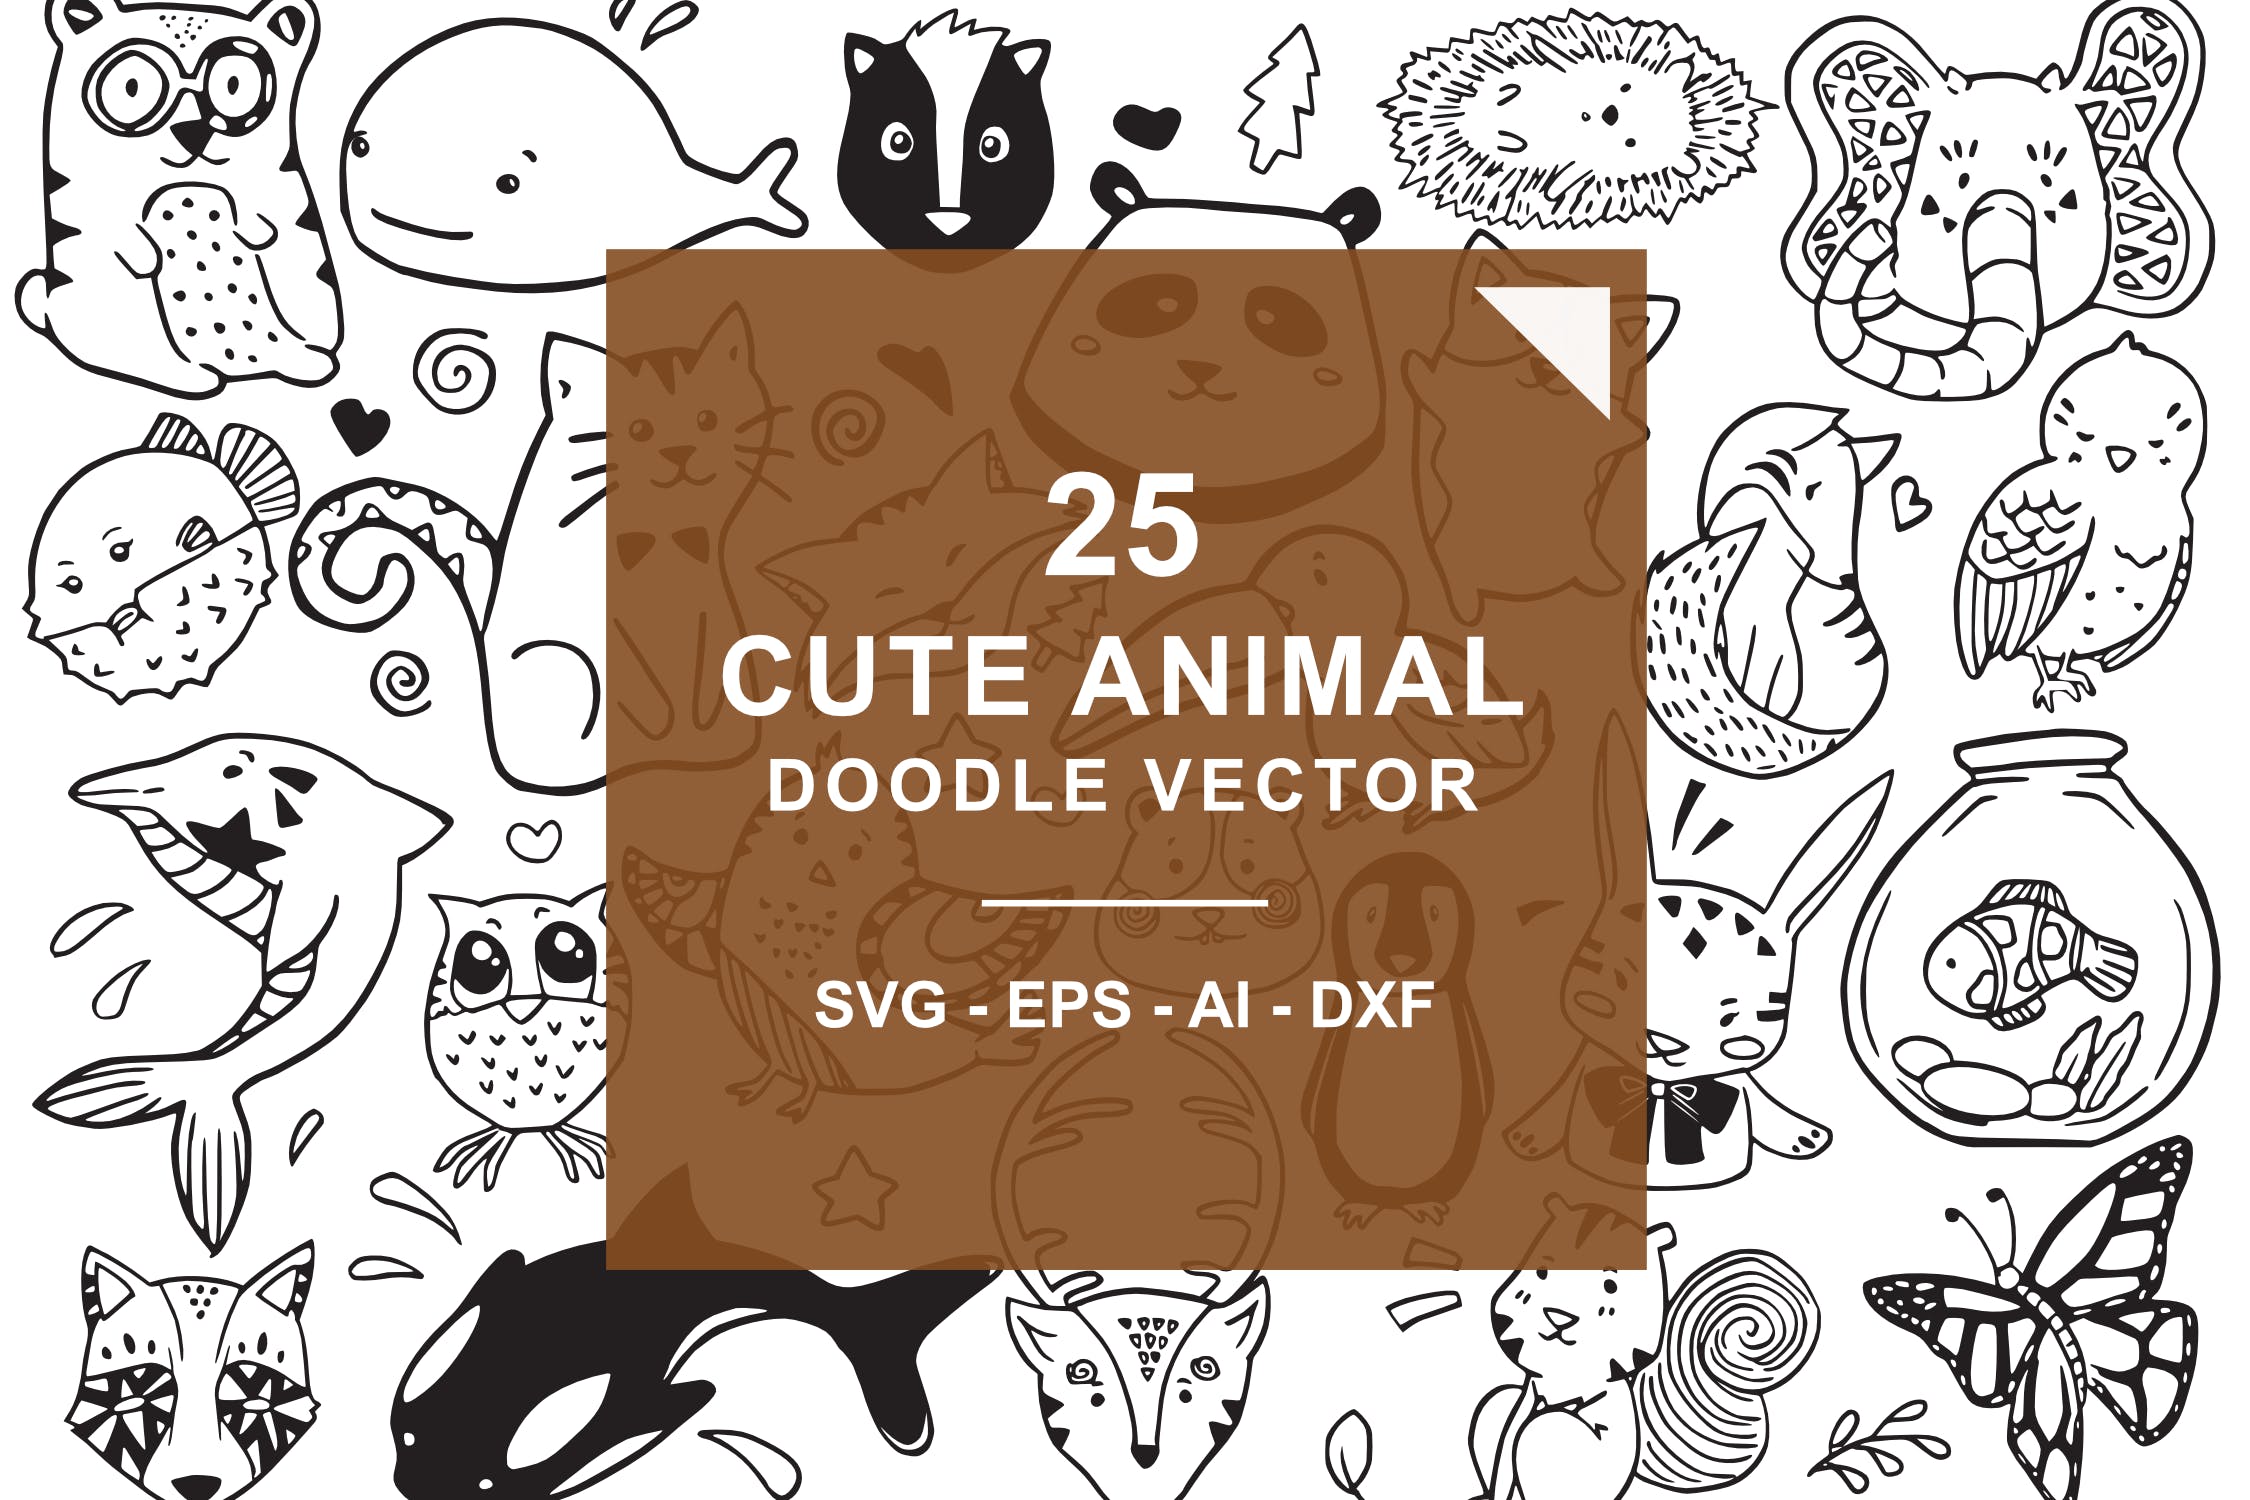 可爱卡通动物涂鸦手绘矢量图案素材 Cute Animal Doodle Vector插图